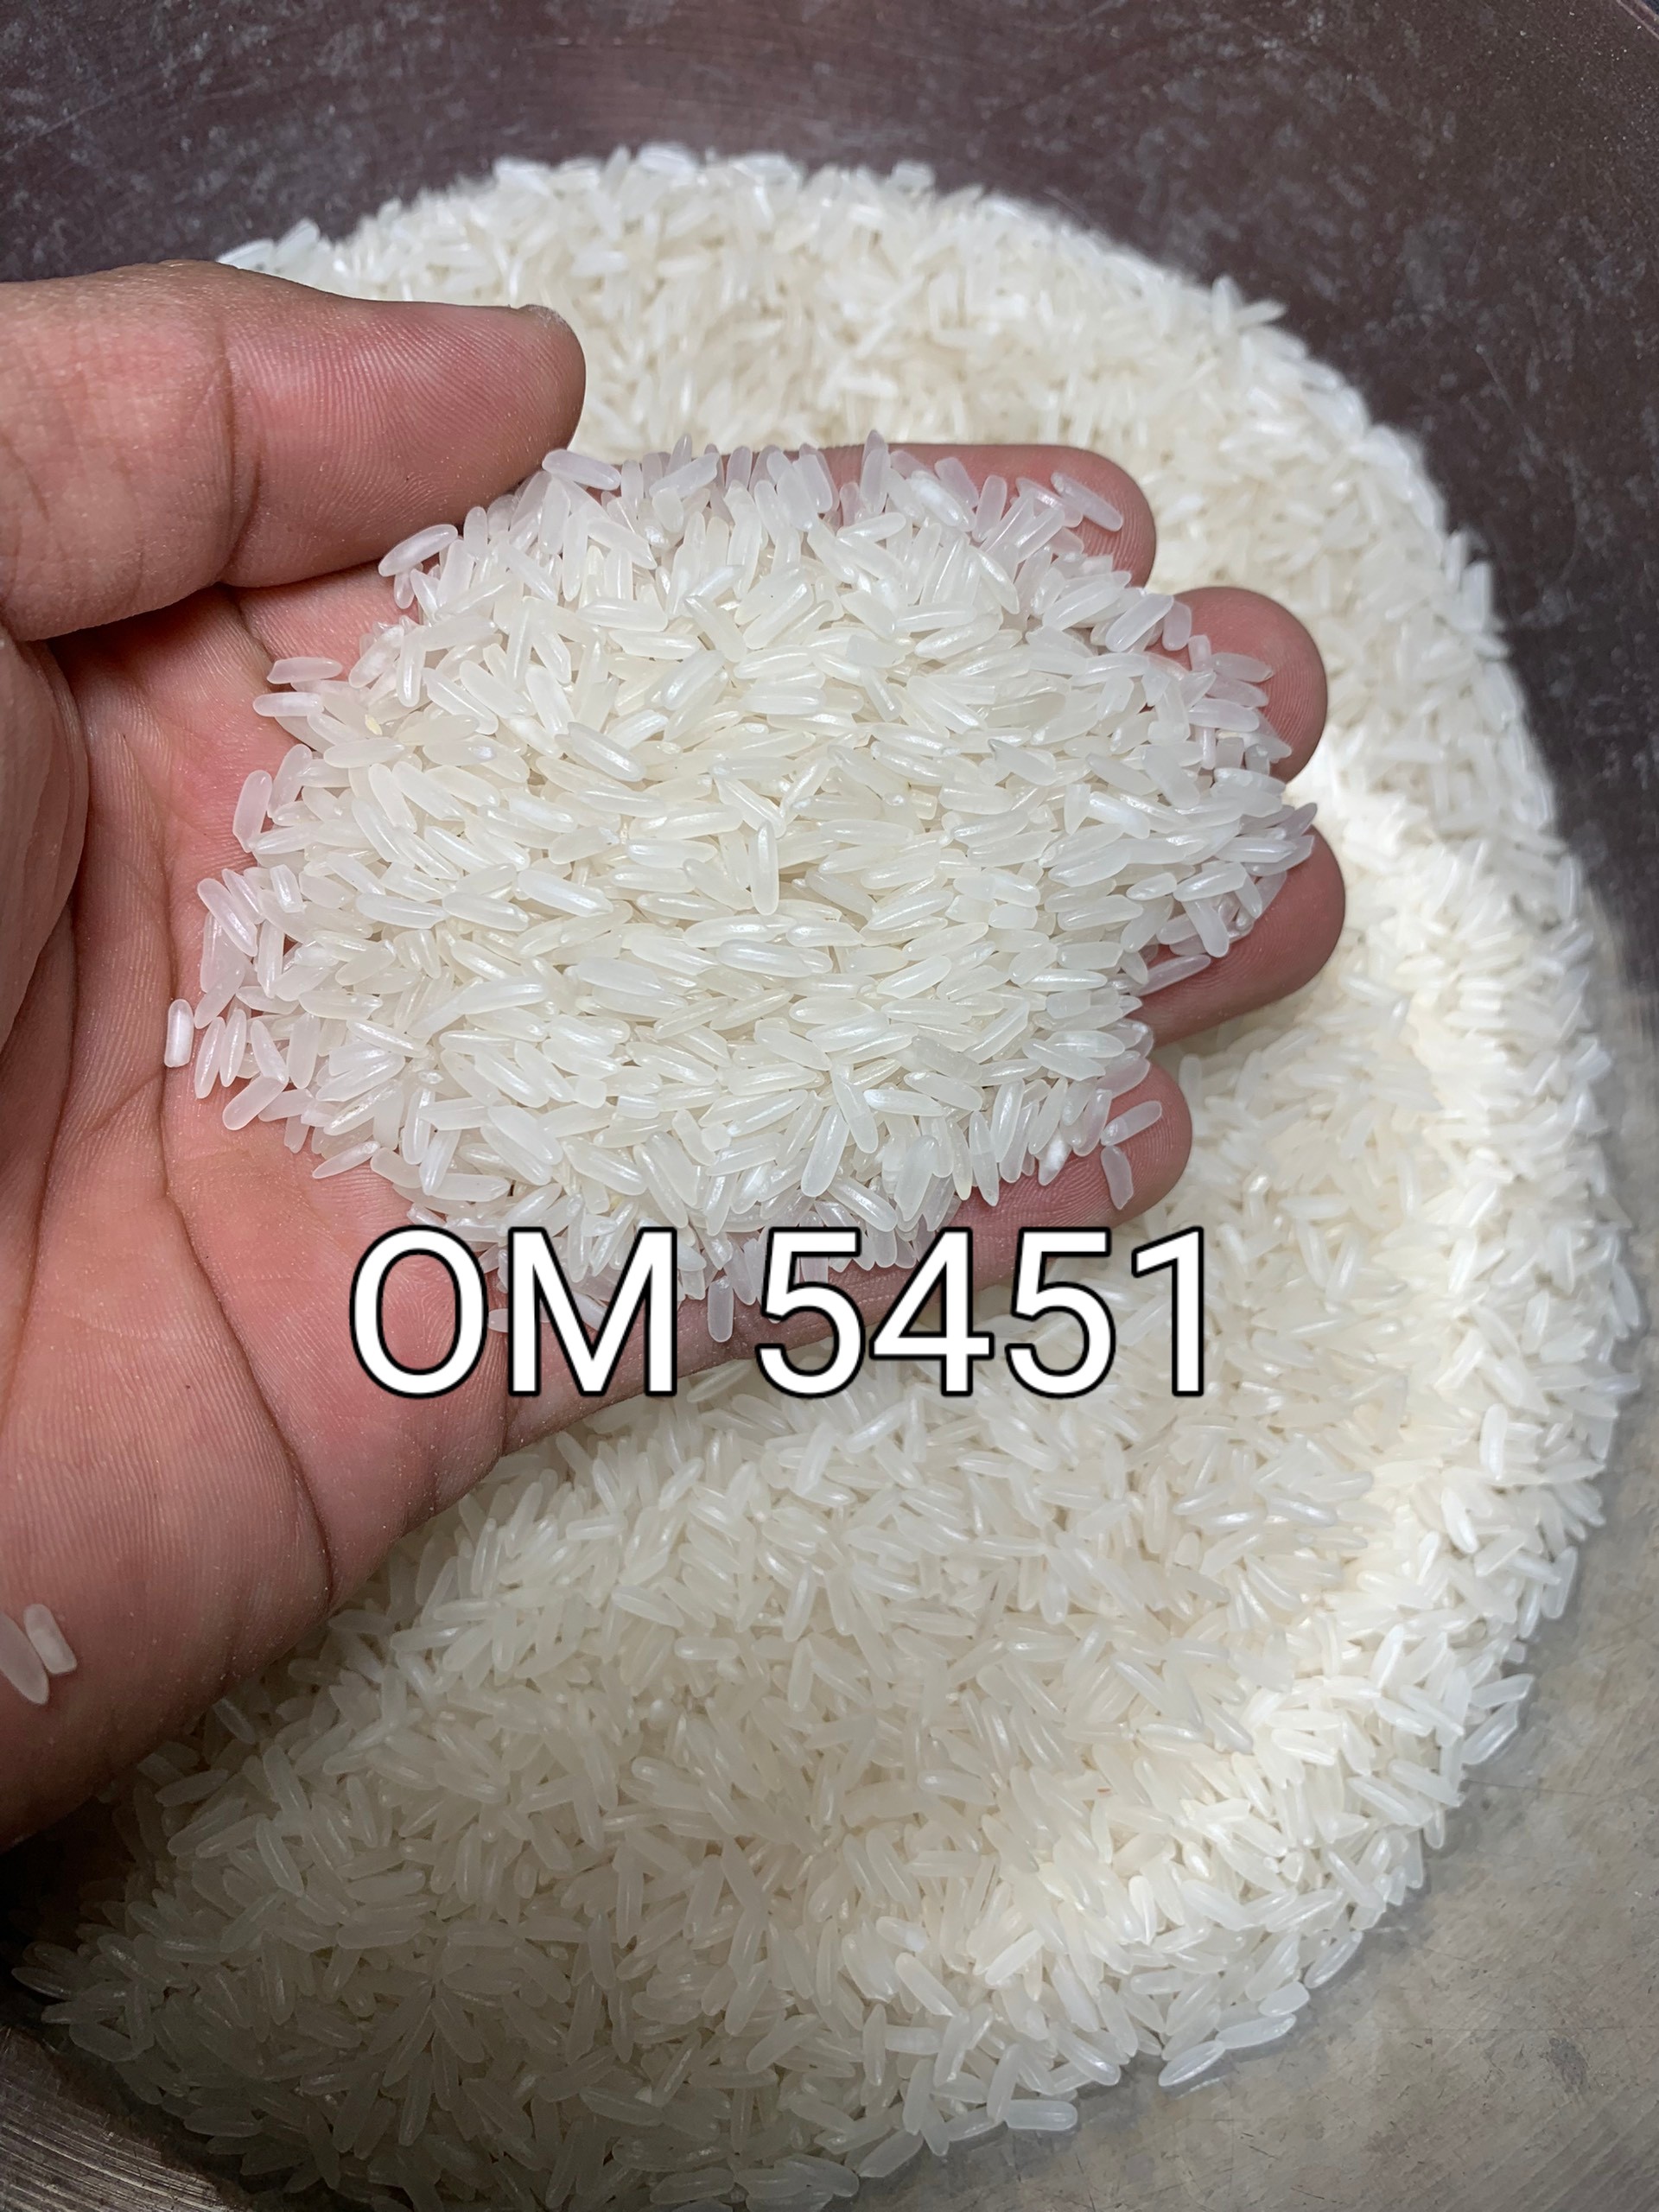 Công ty ABK Sài Gòn cần tìm cước vận chuyển hàng gạo đi Mexico 